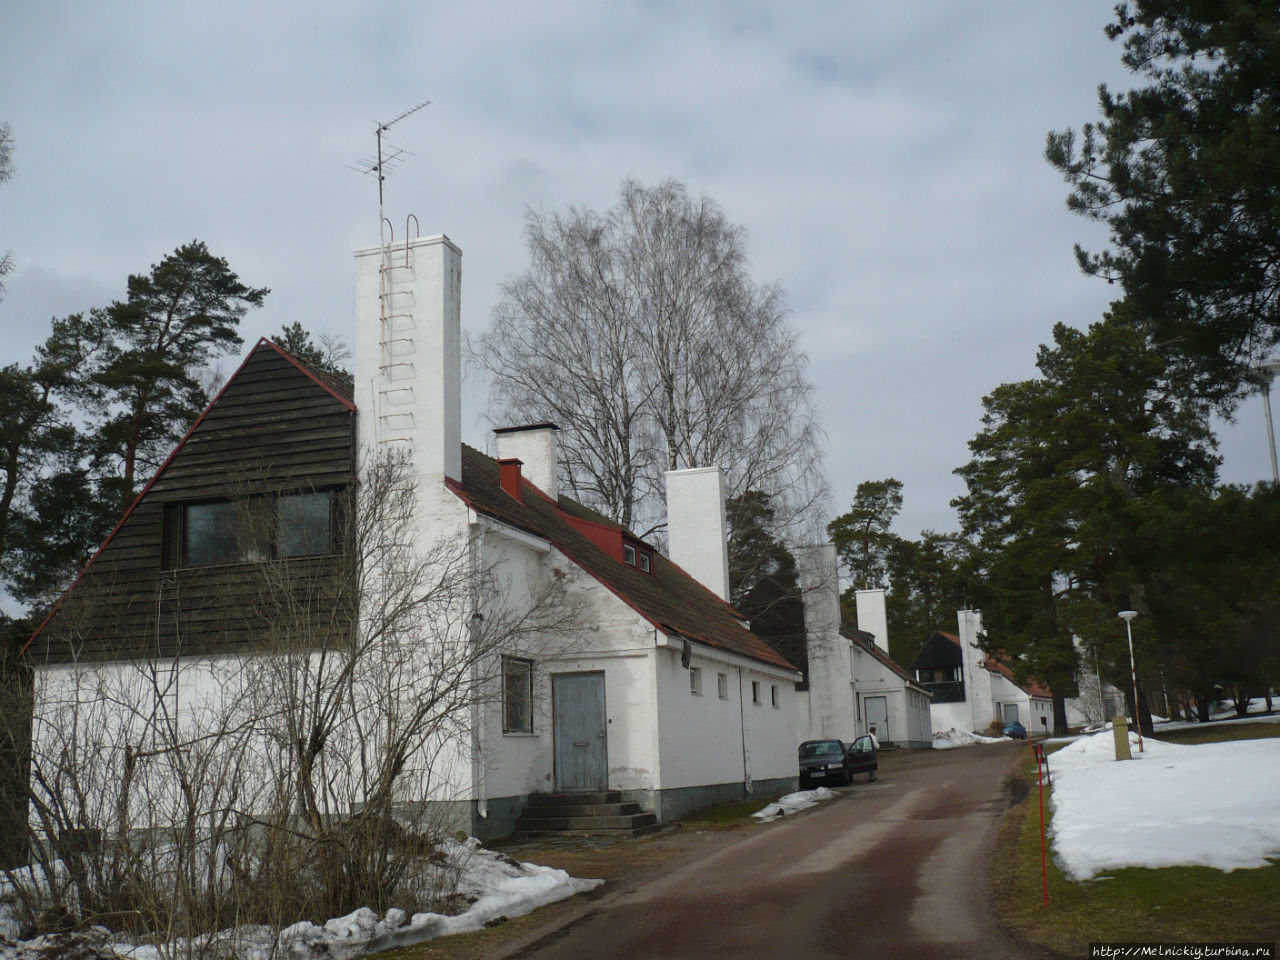 Прогулка по рабочему поселку Инкеройнен, Финляндия